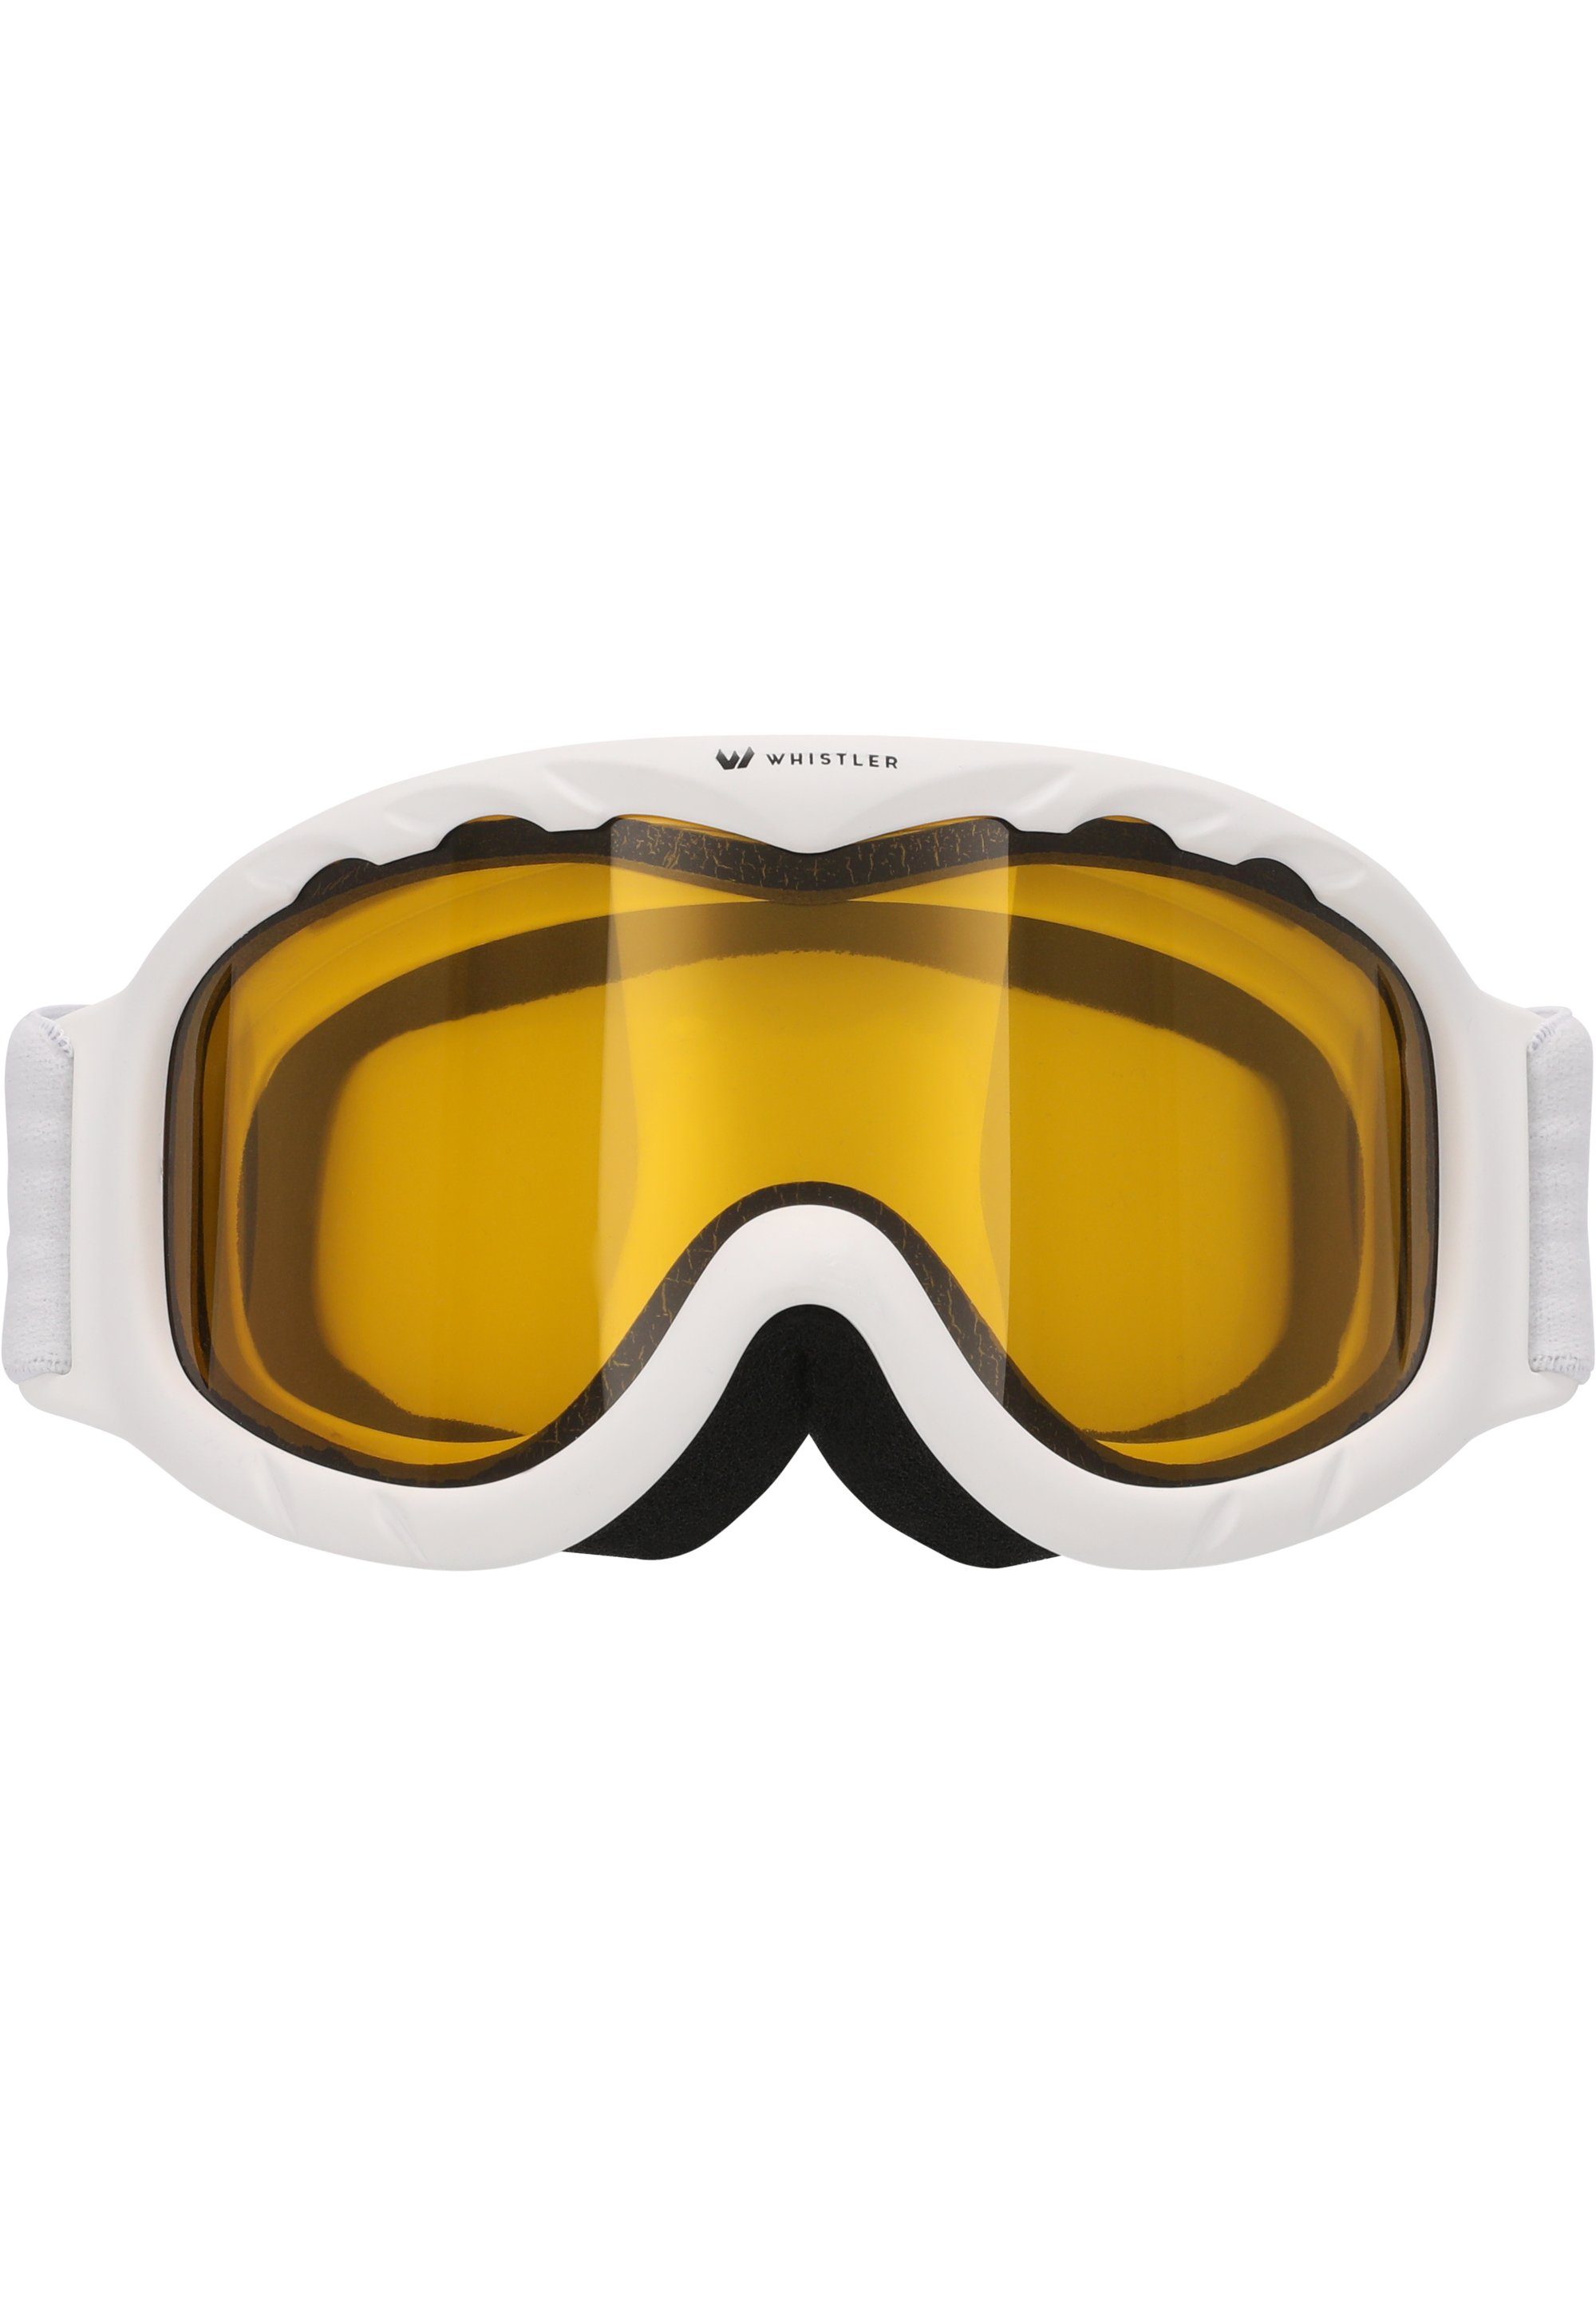 WHISTLER Skibrille WS300 Jr. Ski Goggle, mit Anti-Fog-Beschichtung | Brillen